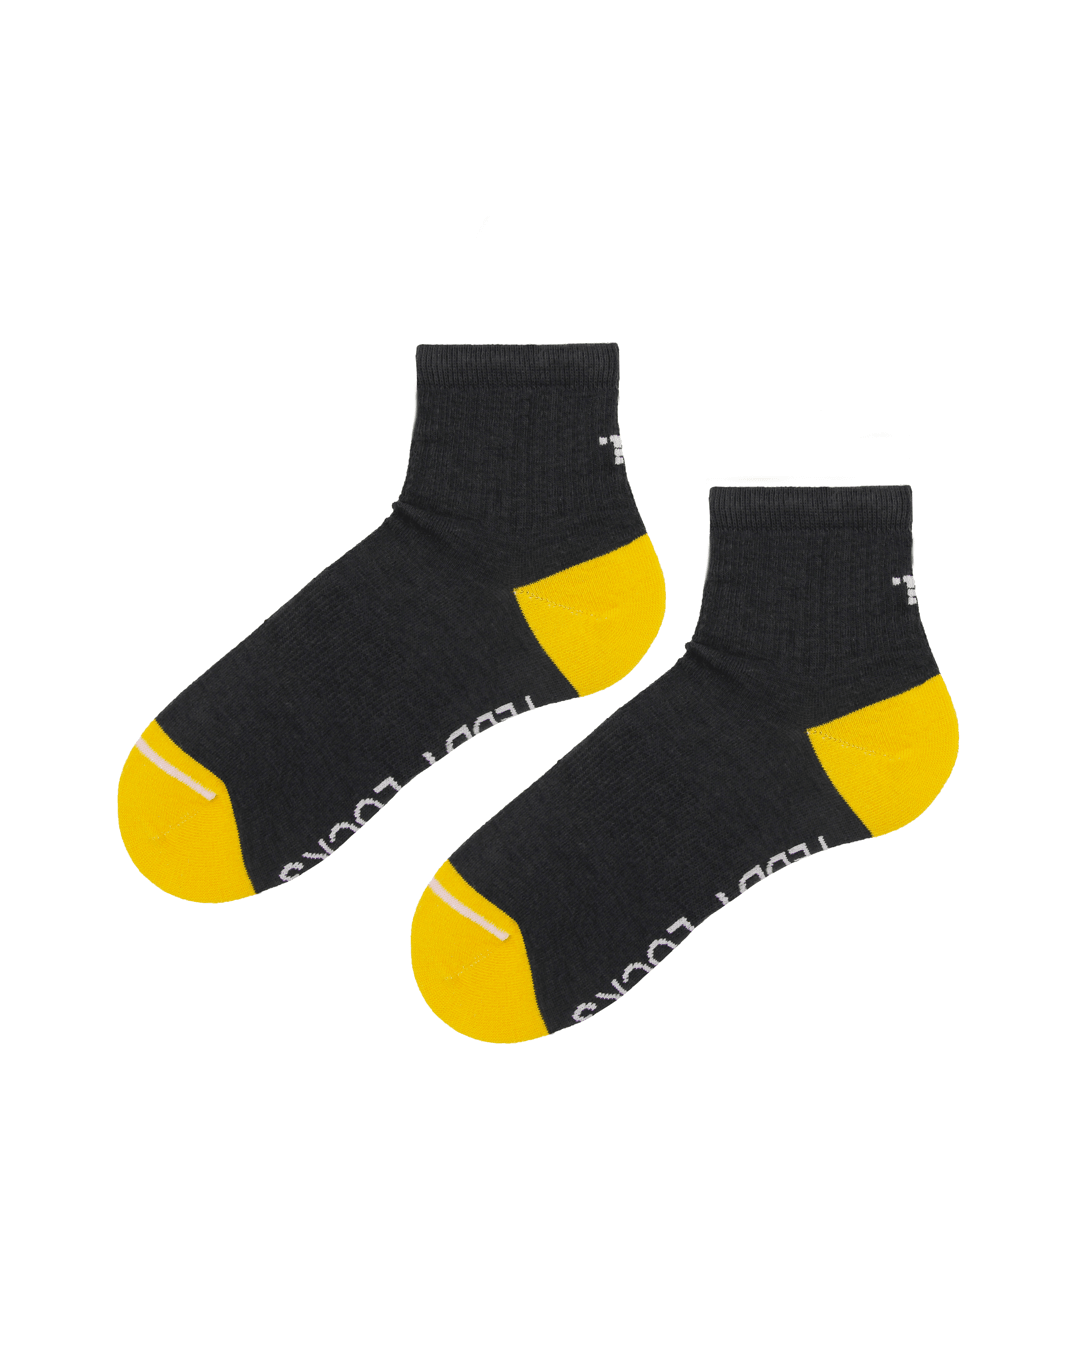 Ecofriendly quarter length socks for men and women. Sustainable gift ideas uk